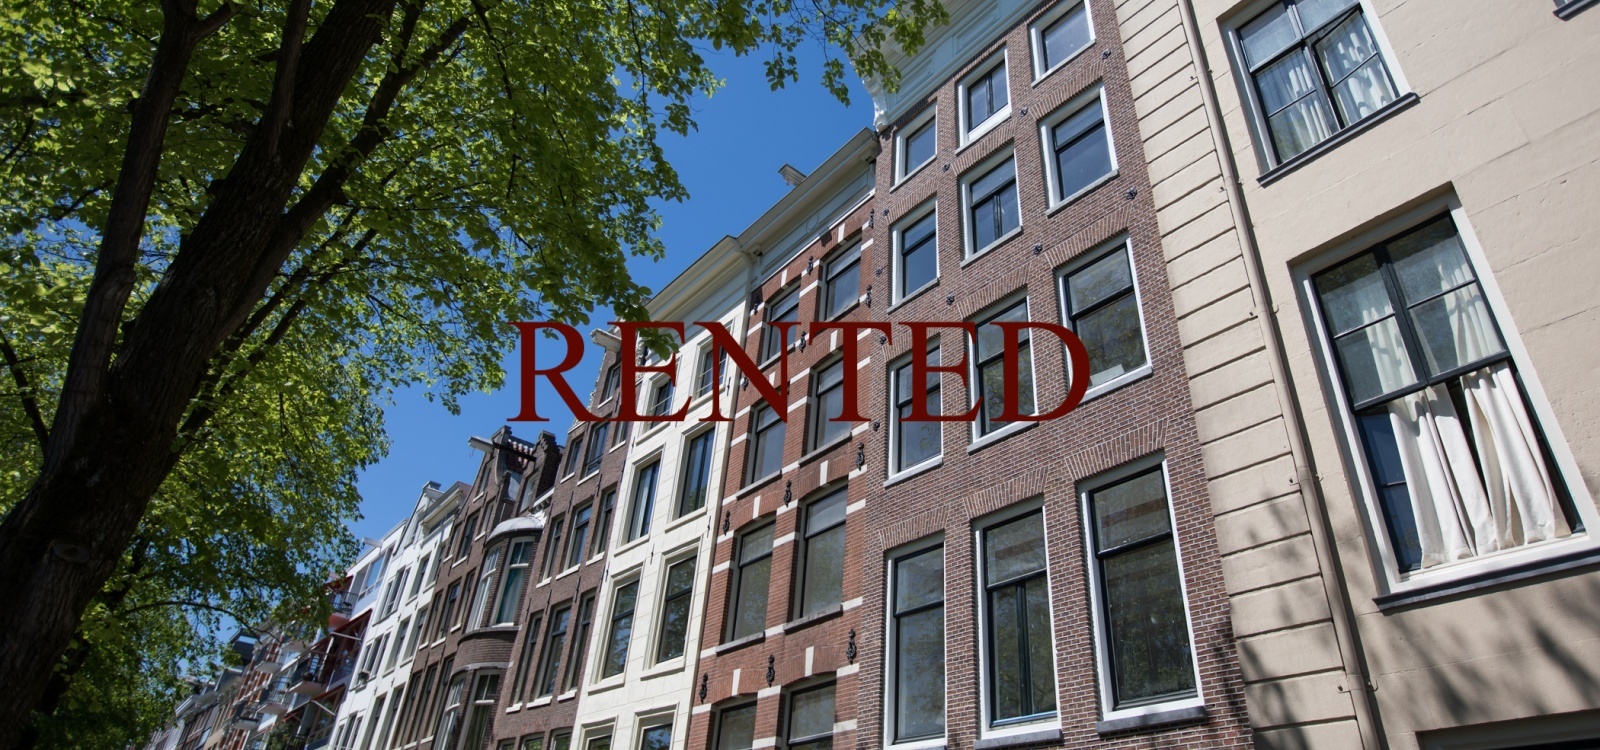 Nieuwe Herengracht,Netherlands 1011SG,2 Bedrooms Bedrooms,1 BathroomBathrooms,Apartment,Nieuwe Herengracht,2,1504